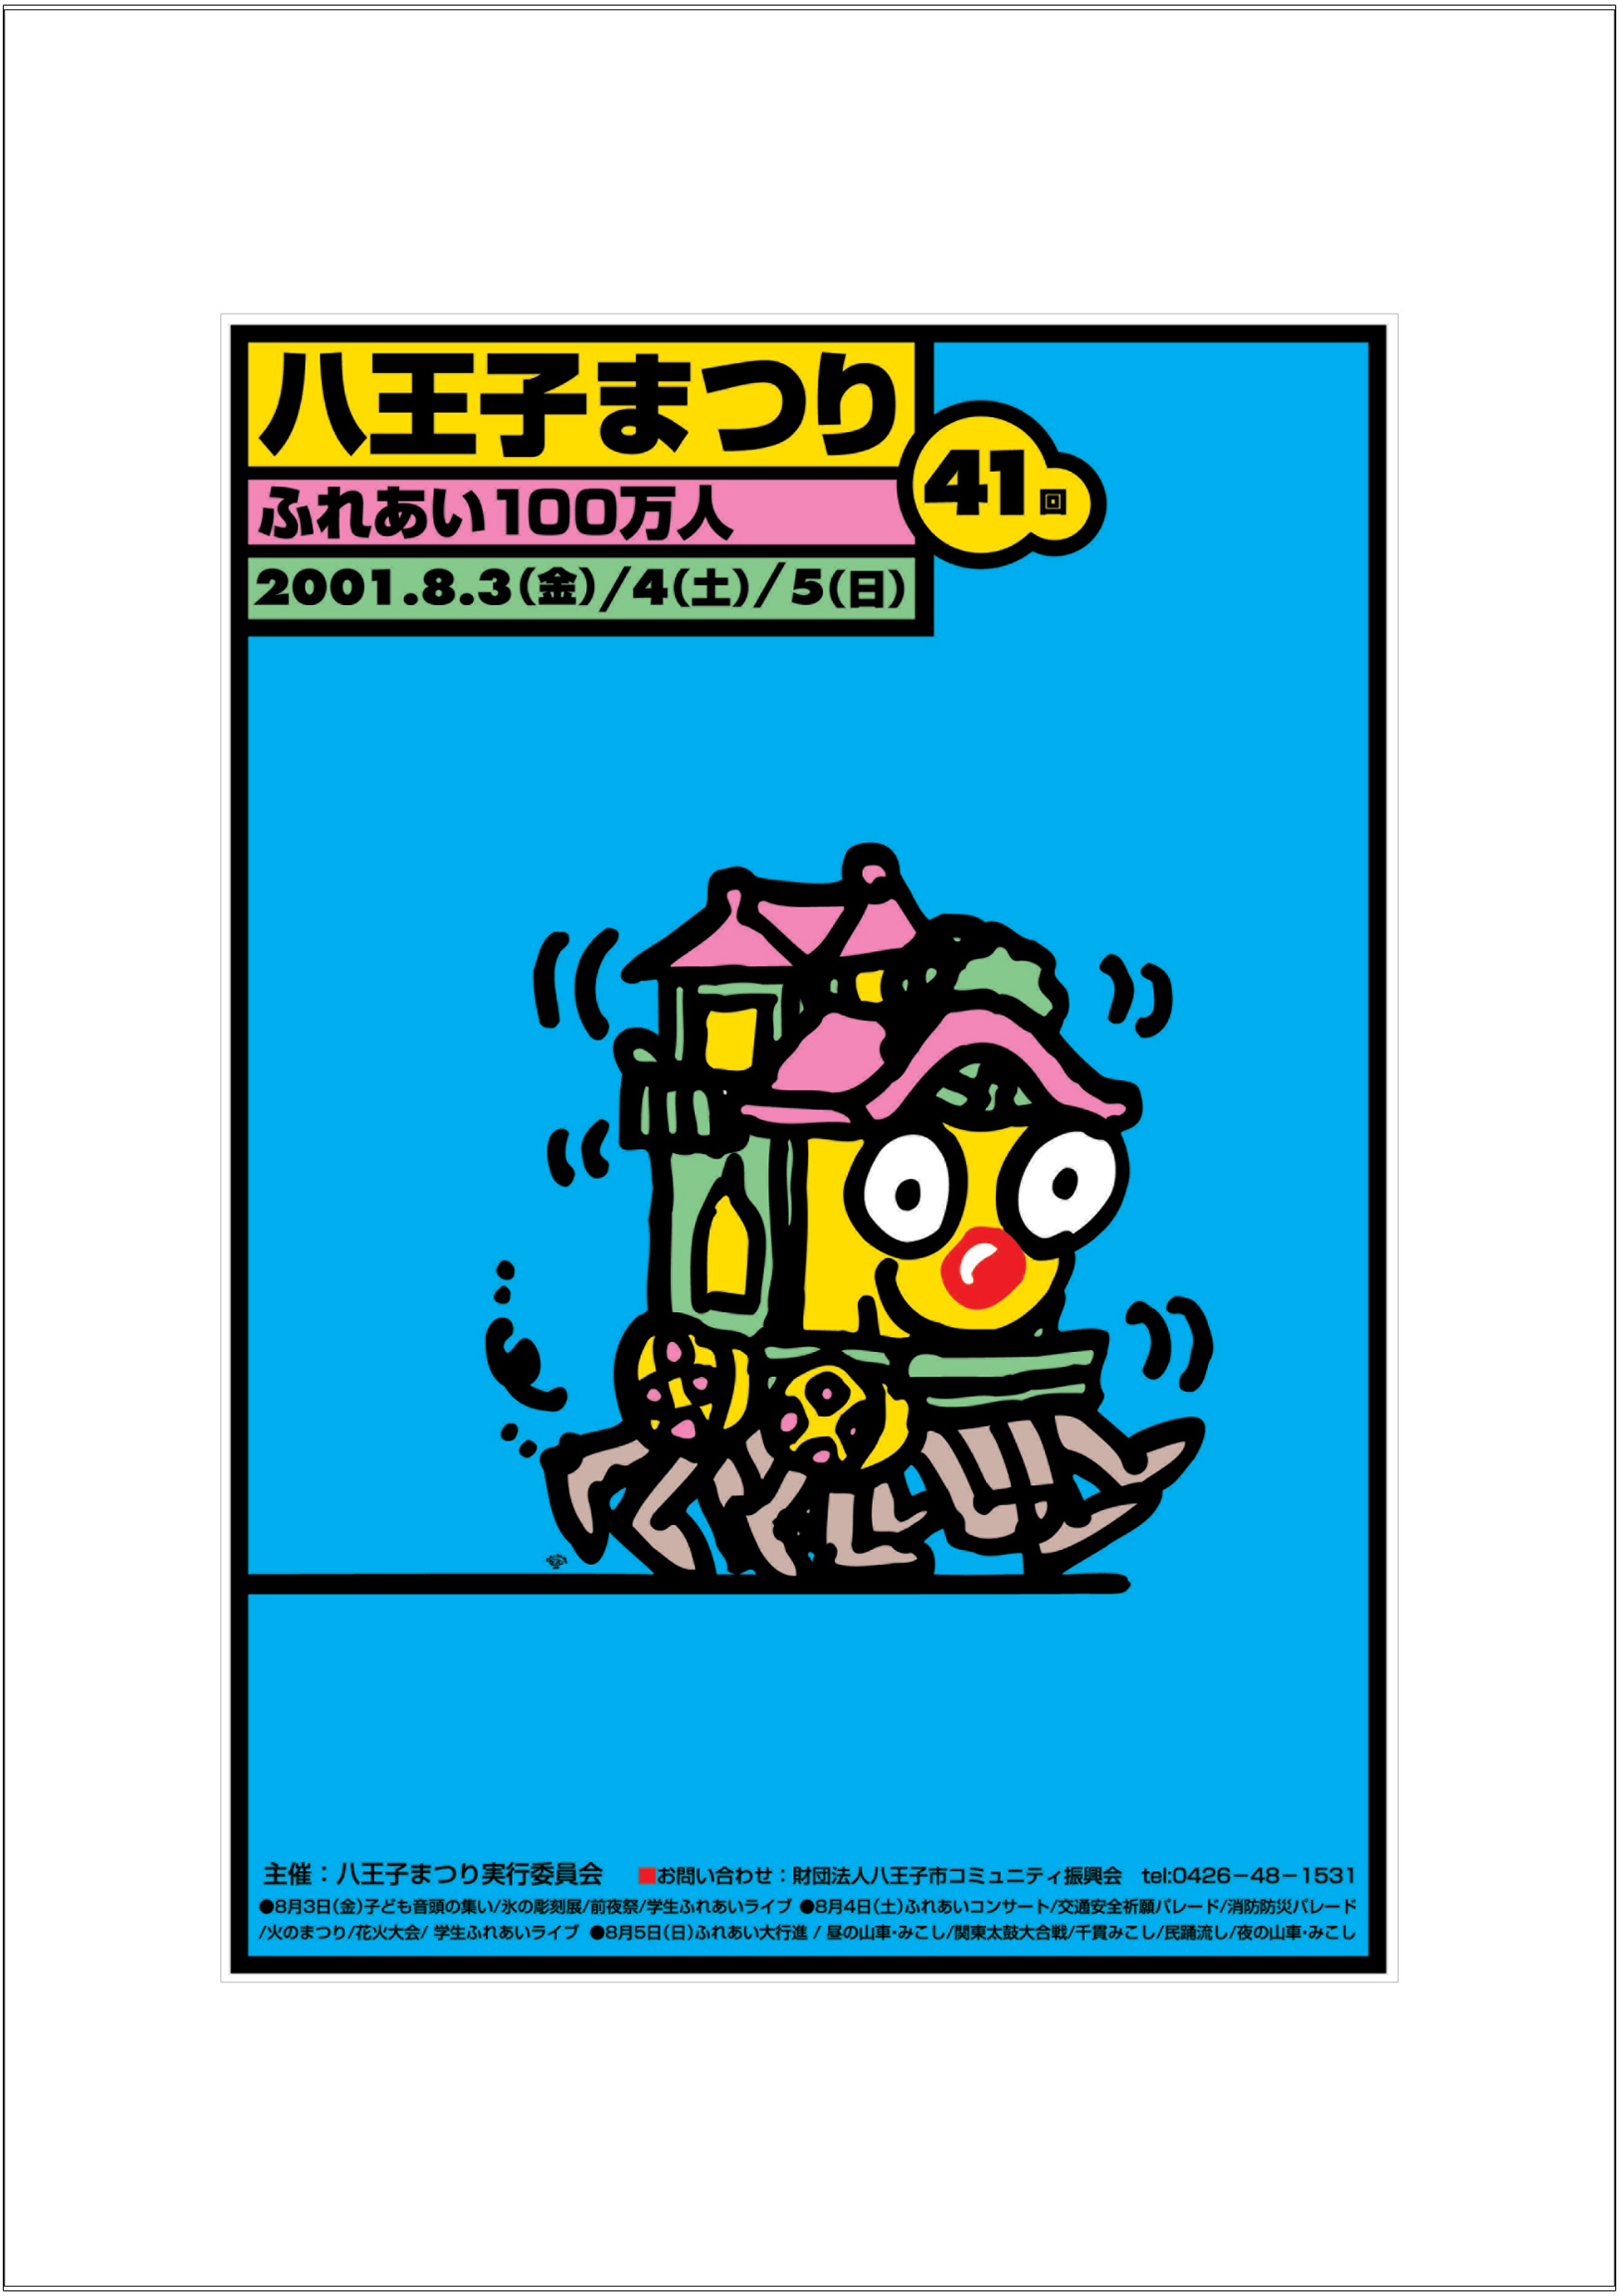 ポスターアーティスト秋山孝が2001年に制作したアートカード「アートカード ポスター 2001 02」